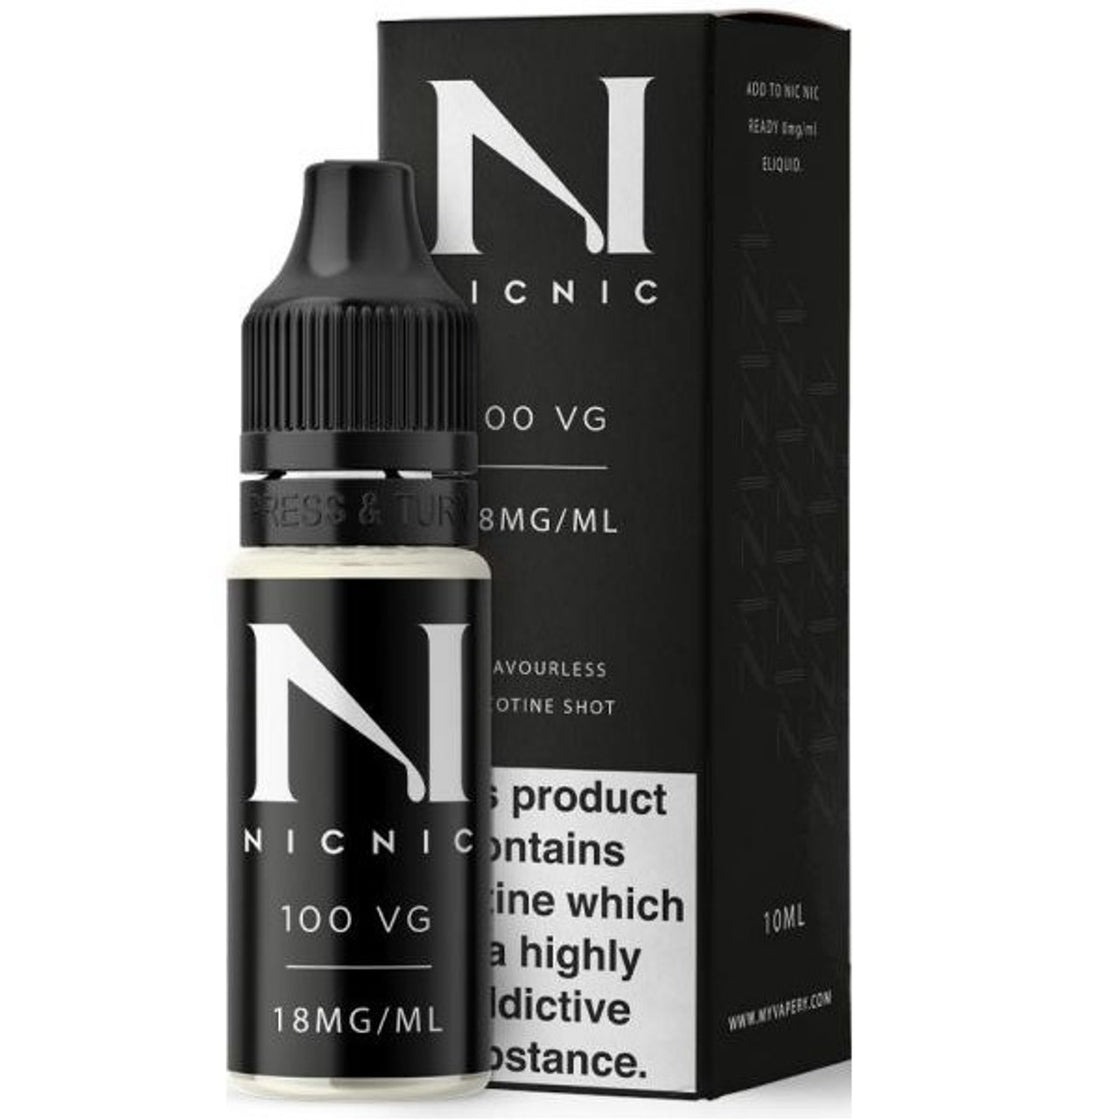 NIC NIC 100VG Nicotine Shot BY NIC NIC